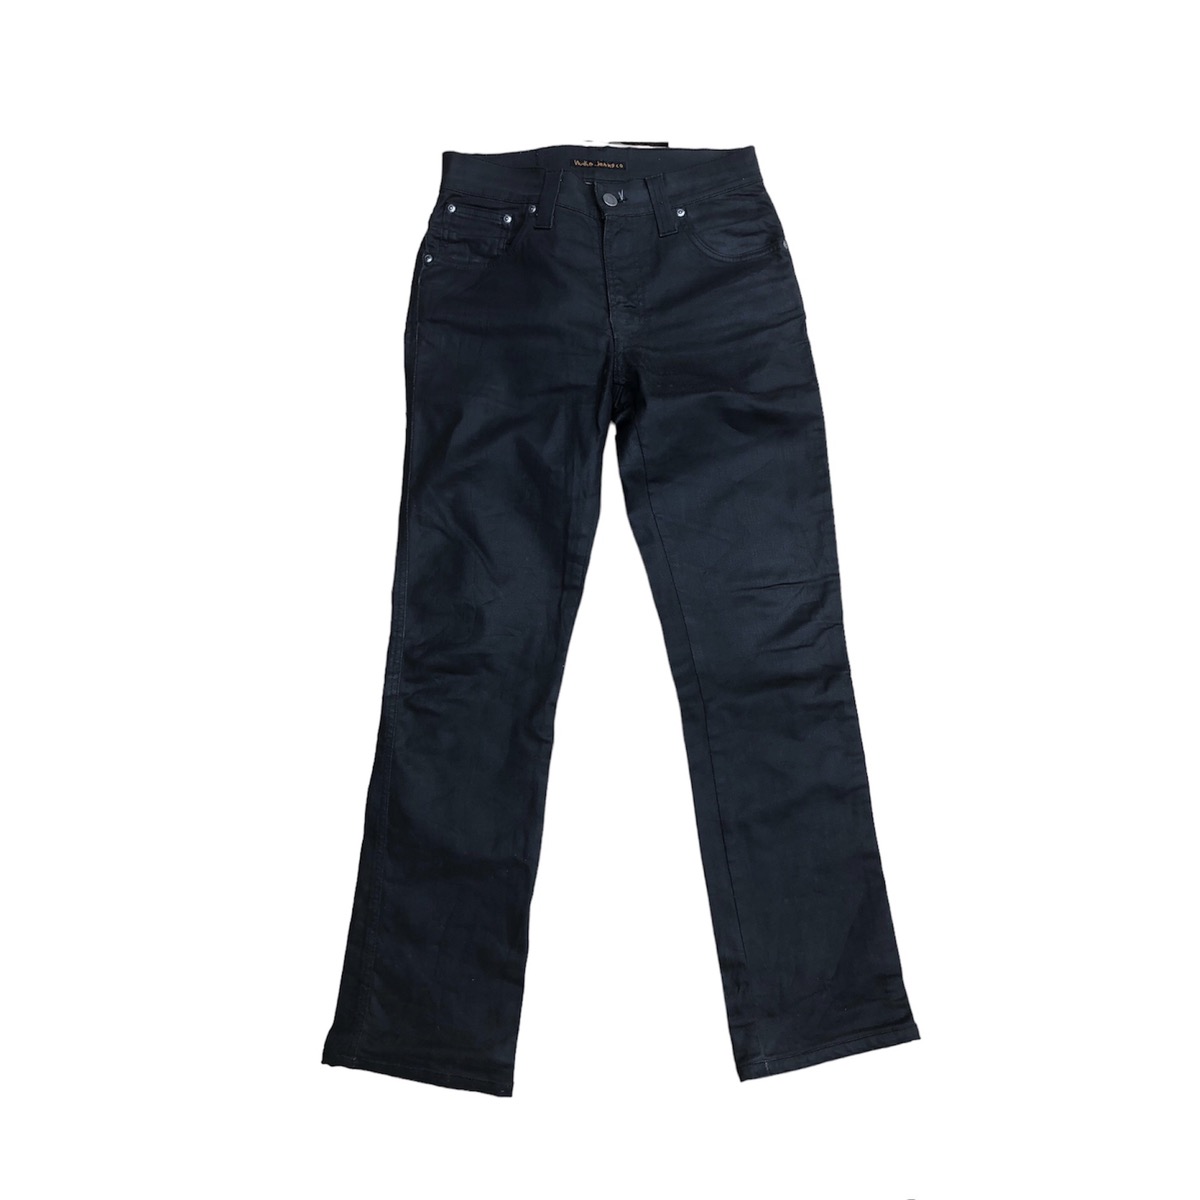 Nudie jeans slim Jim dry black coated Travis Scott - 1